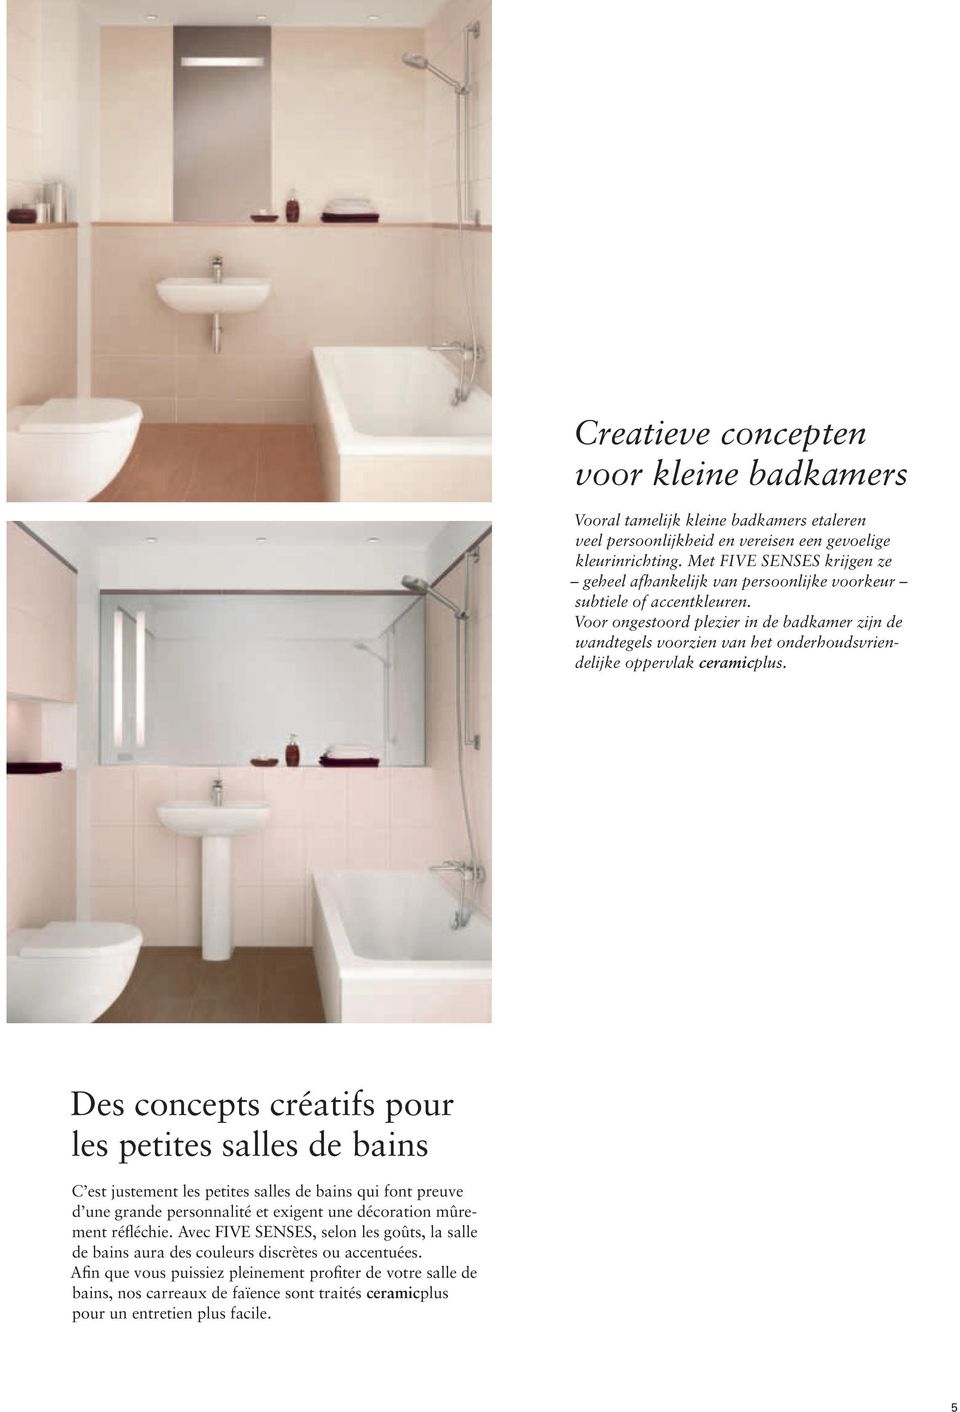 Voor ongestoord plezier in de badkamer zijn de wandtegels voorzien van het onderhoudsvriendelijke oppervlak ceramicplus.